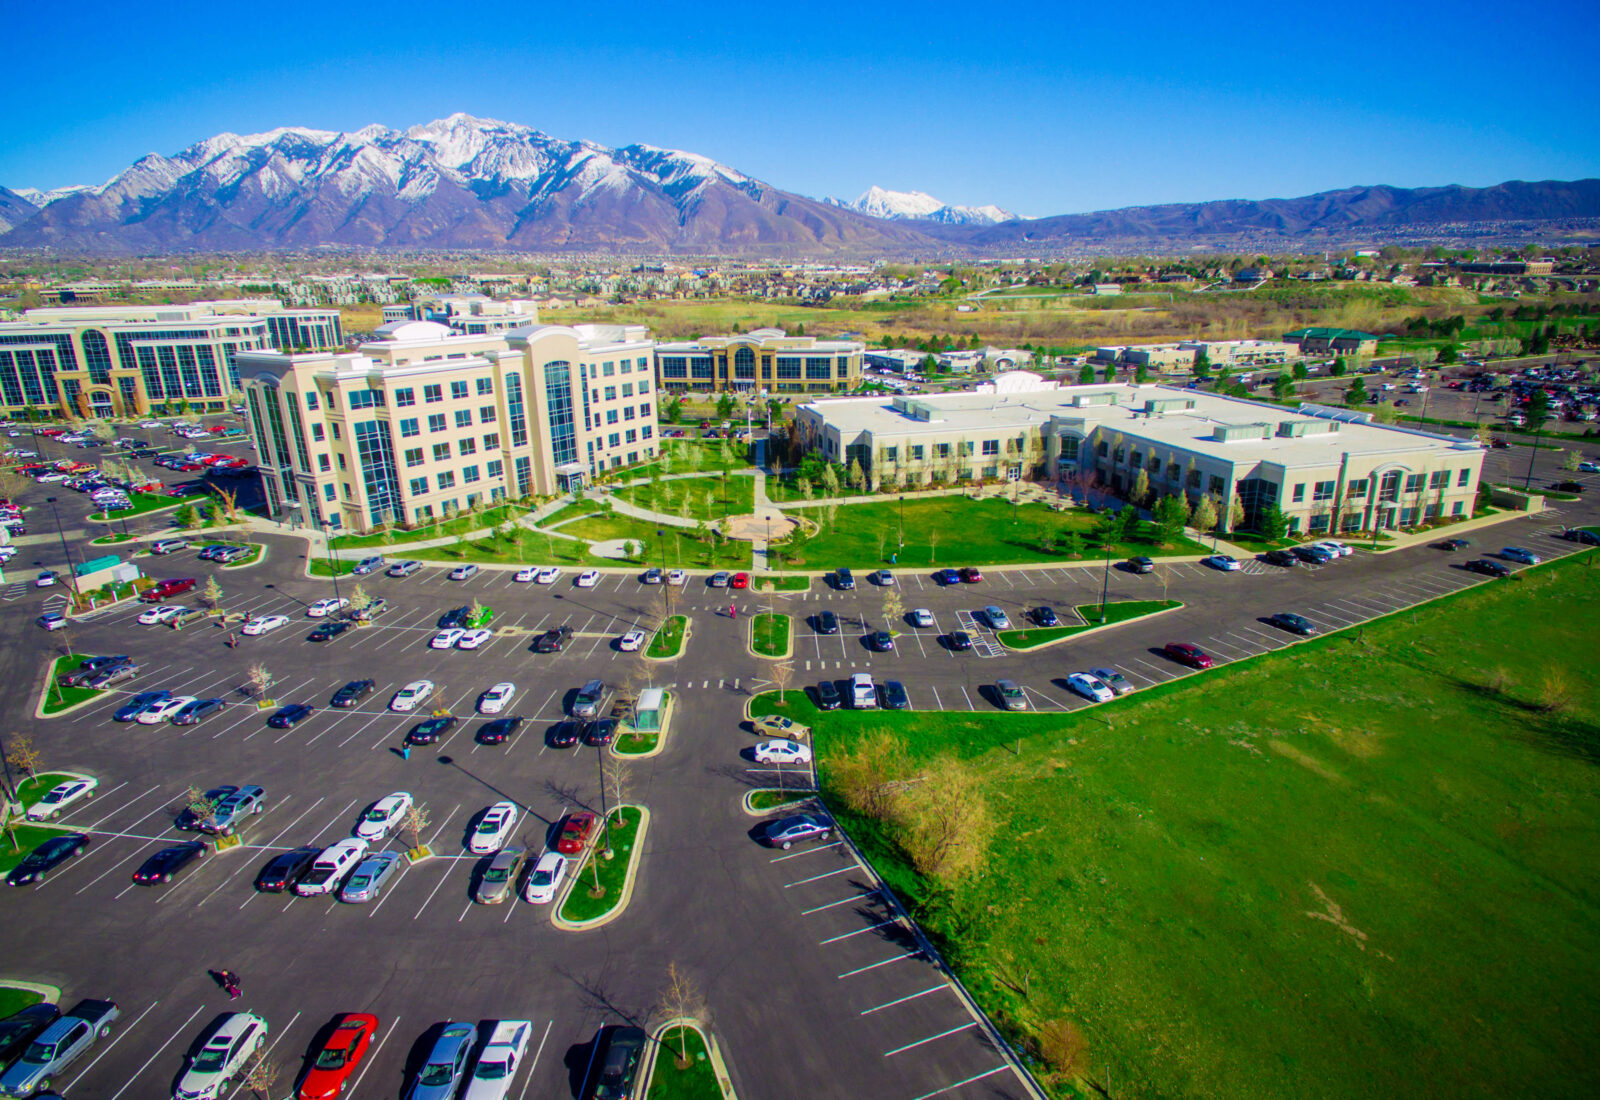 Roseman University of Health Sciences Nevada & Utah